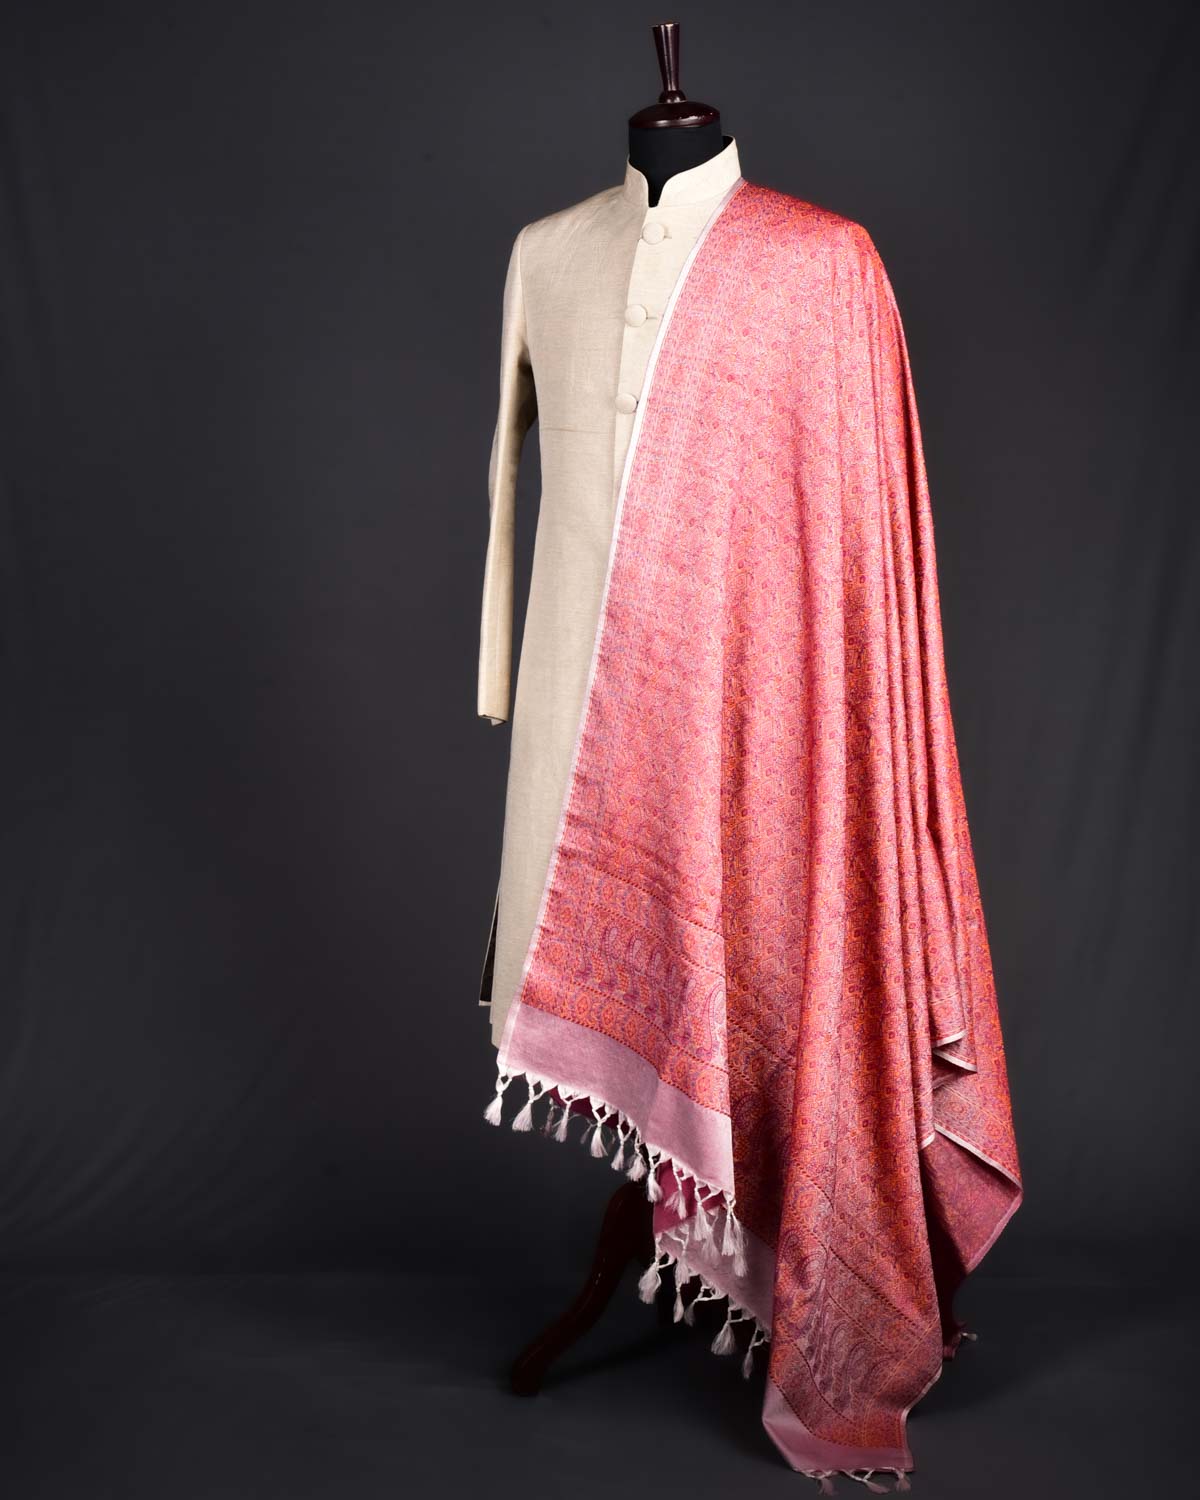 Red on Cream Banarasi Tehra Jamawar Handwoven Silk-Wool Shawl for Mens - By HolyWeaves, Benares